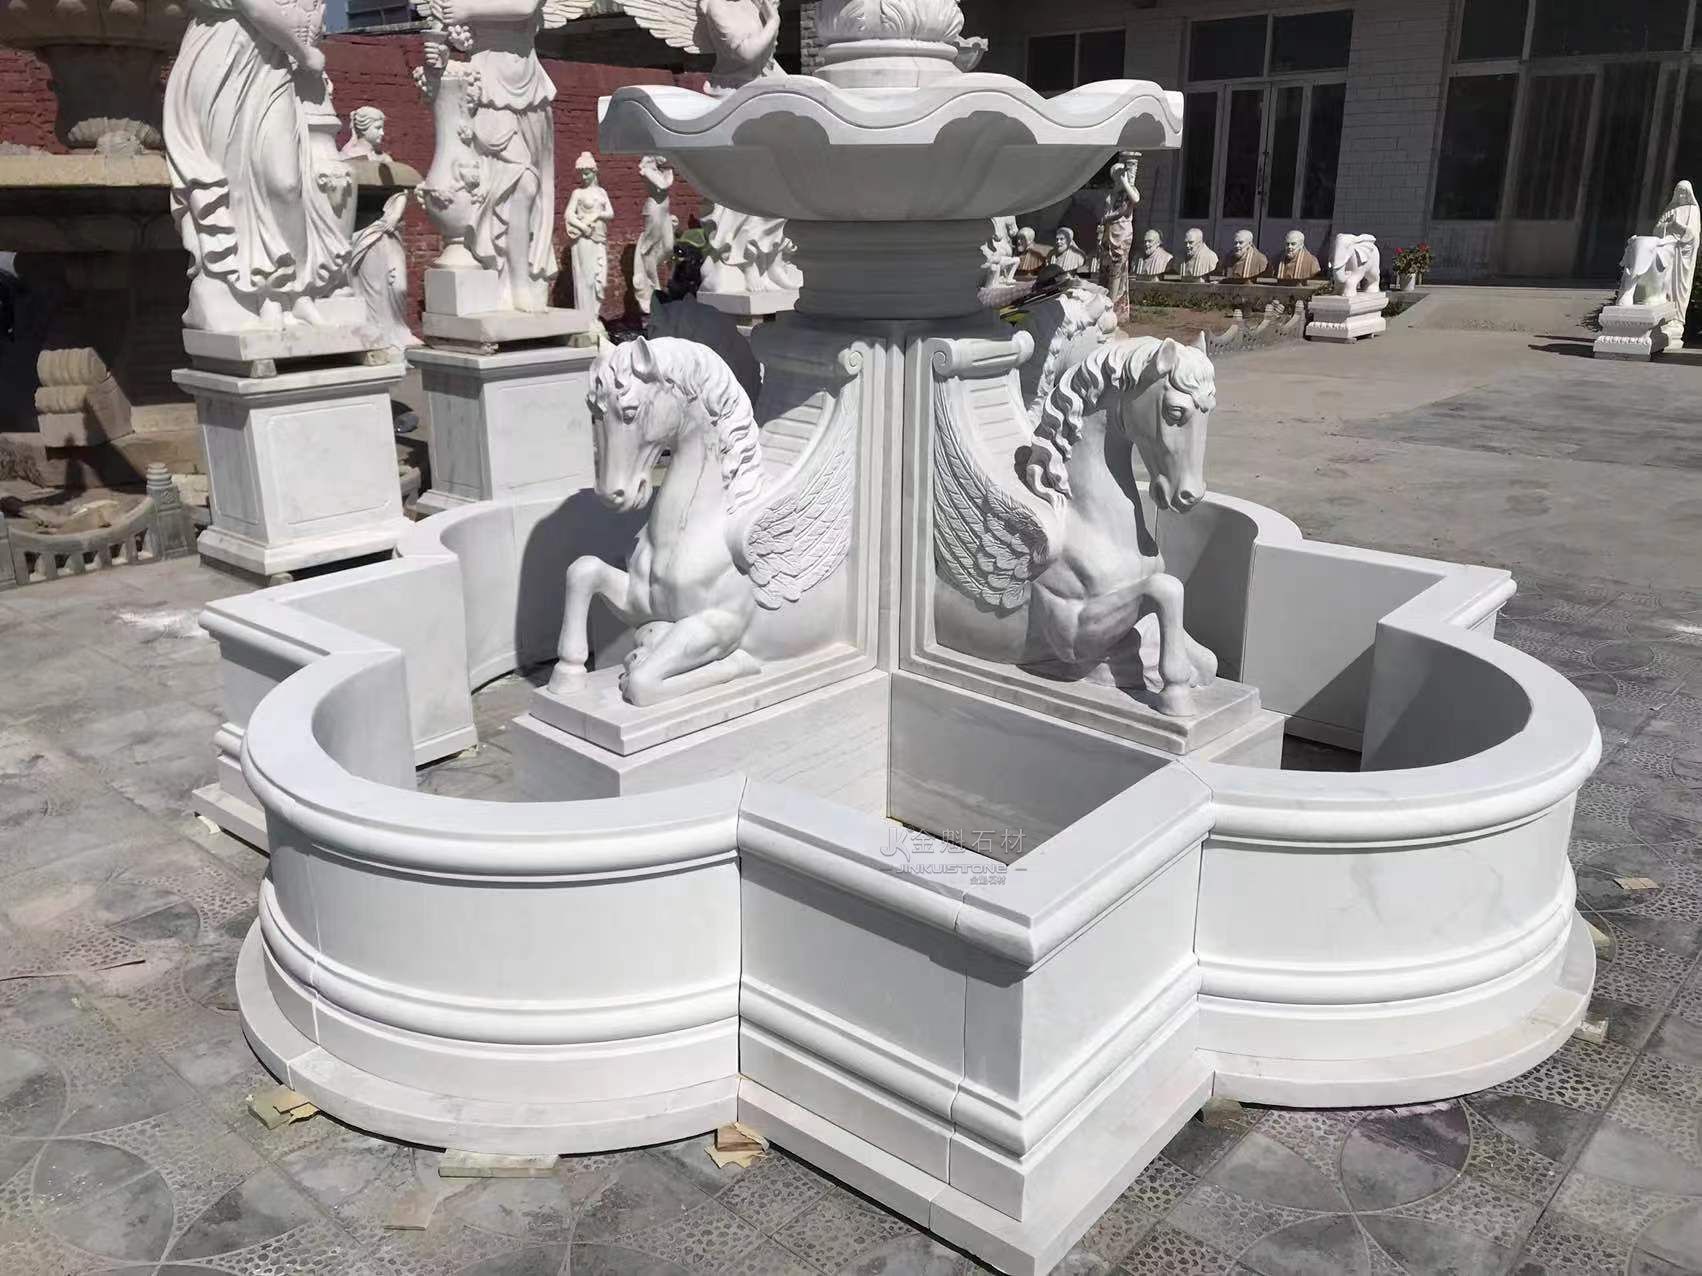 Customized White Marble Pegasus Fountain